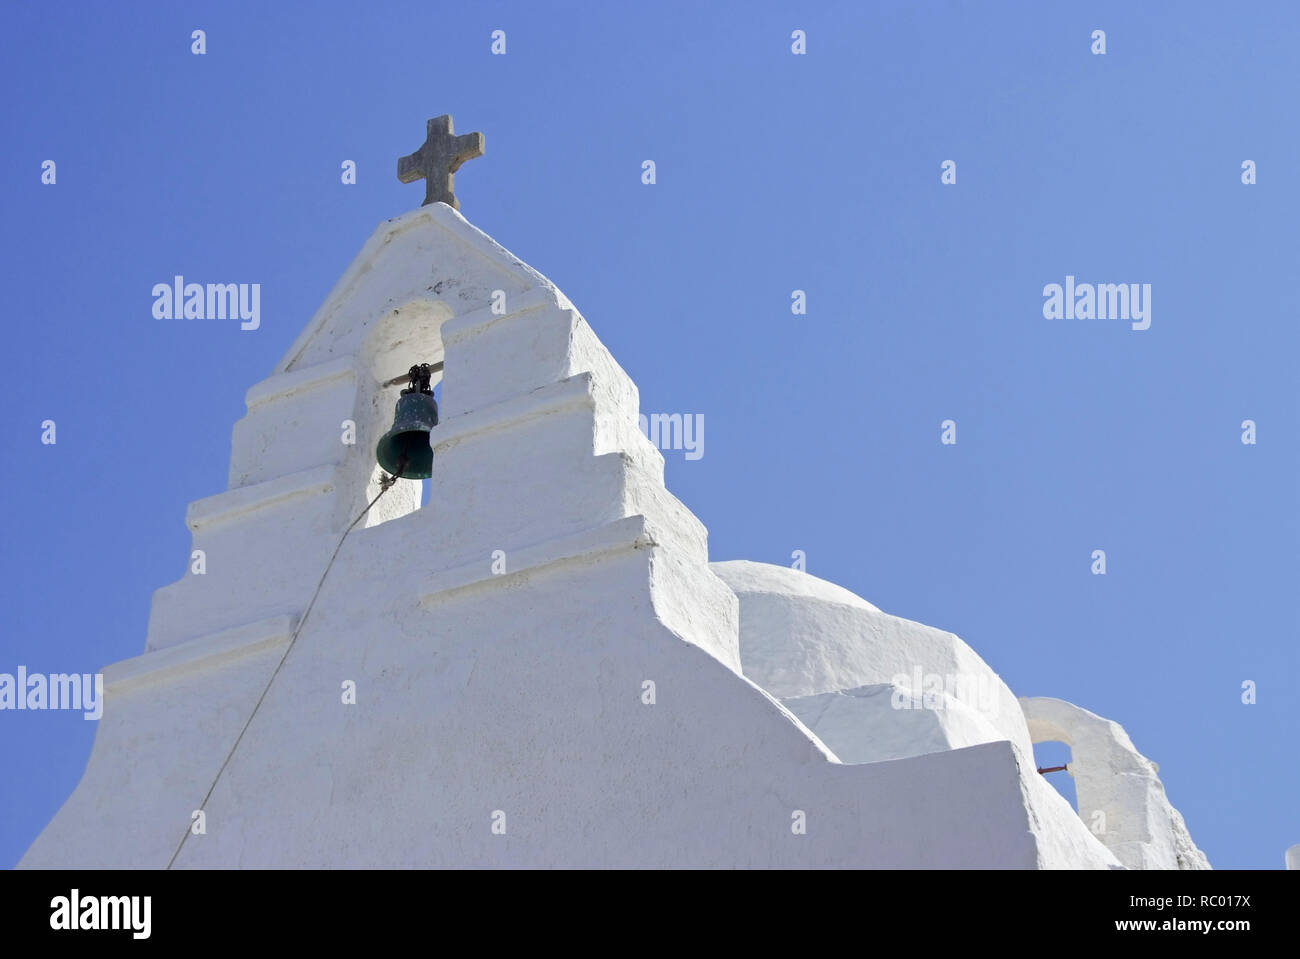 Panagia-Paraportiani Kirche in der Chora, Mykonos, Insel der Kykladen im Ägäischen Meer, Griechenland, Europa | The church of Panagia (Virgin Mary) Pa Stock Photo